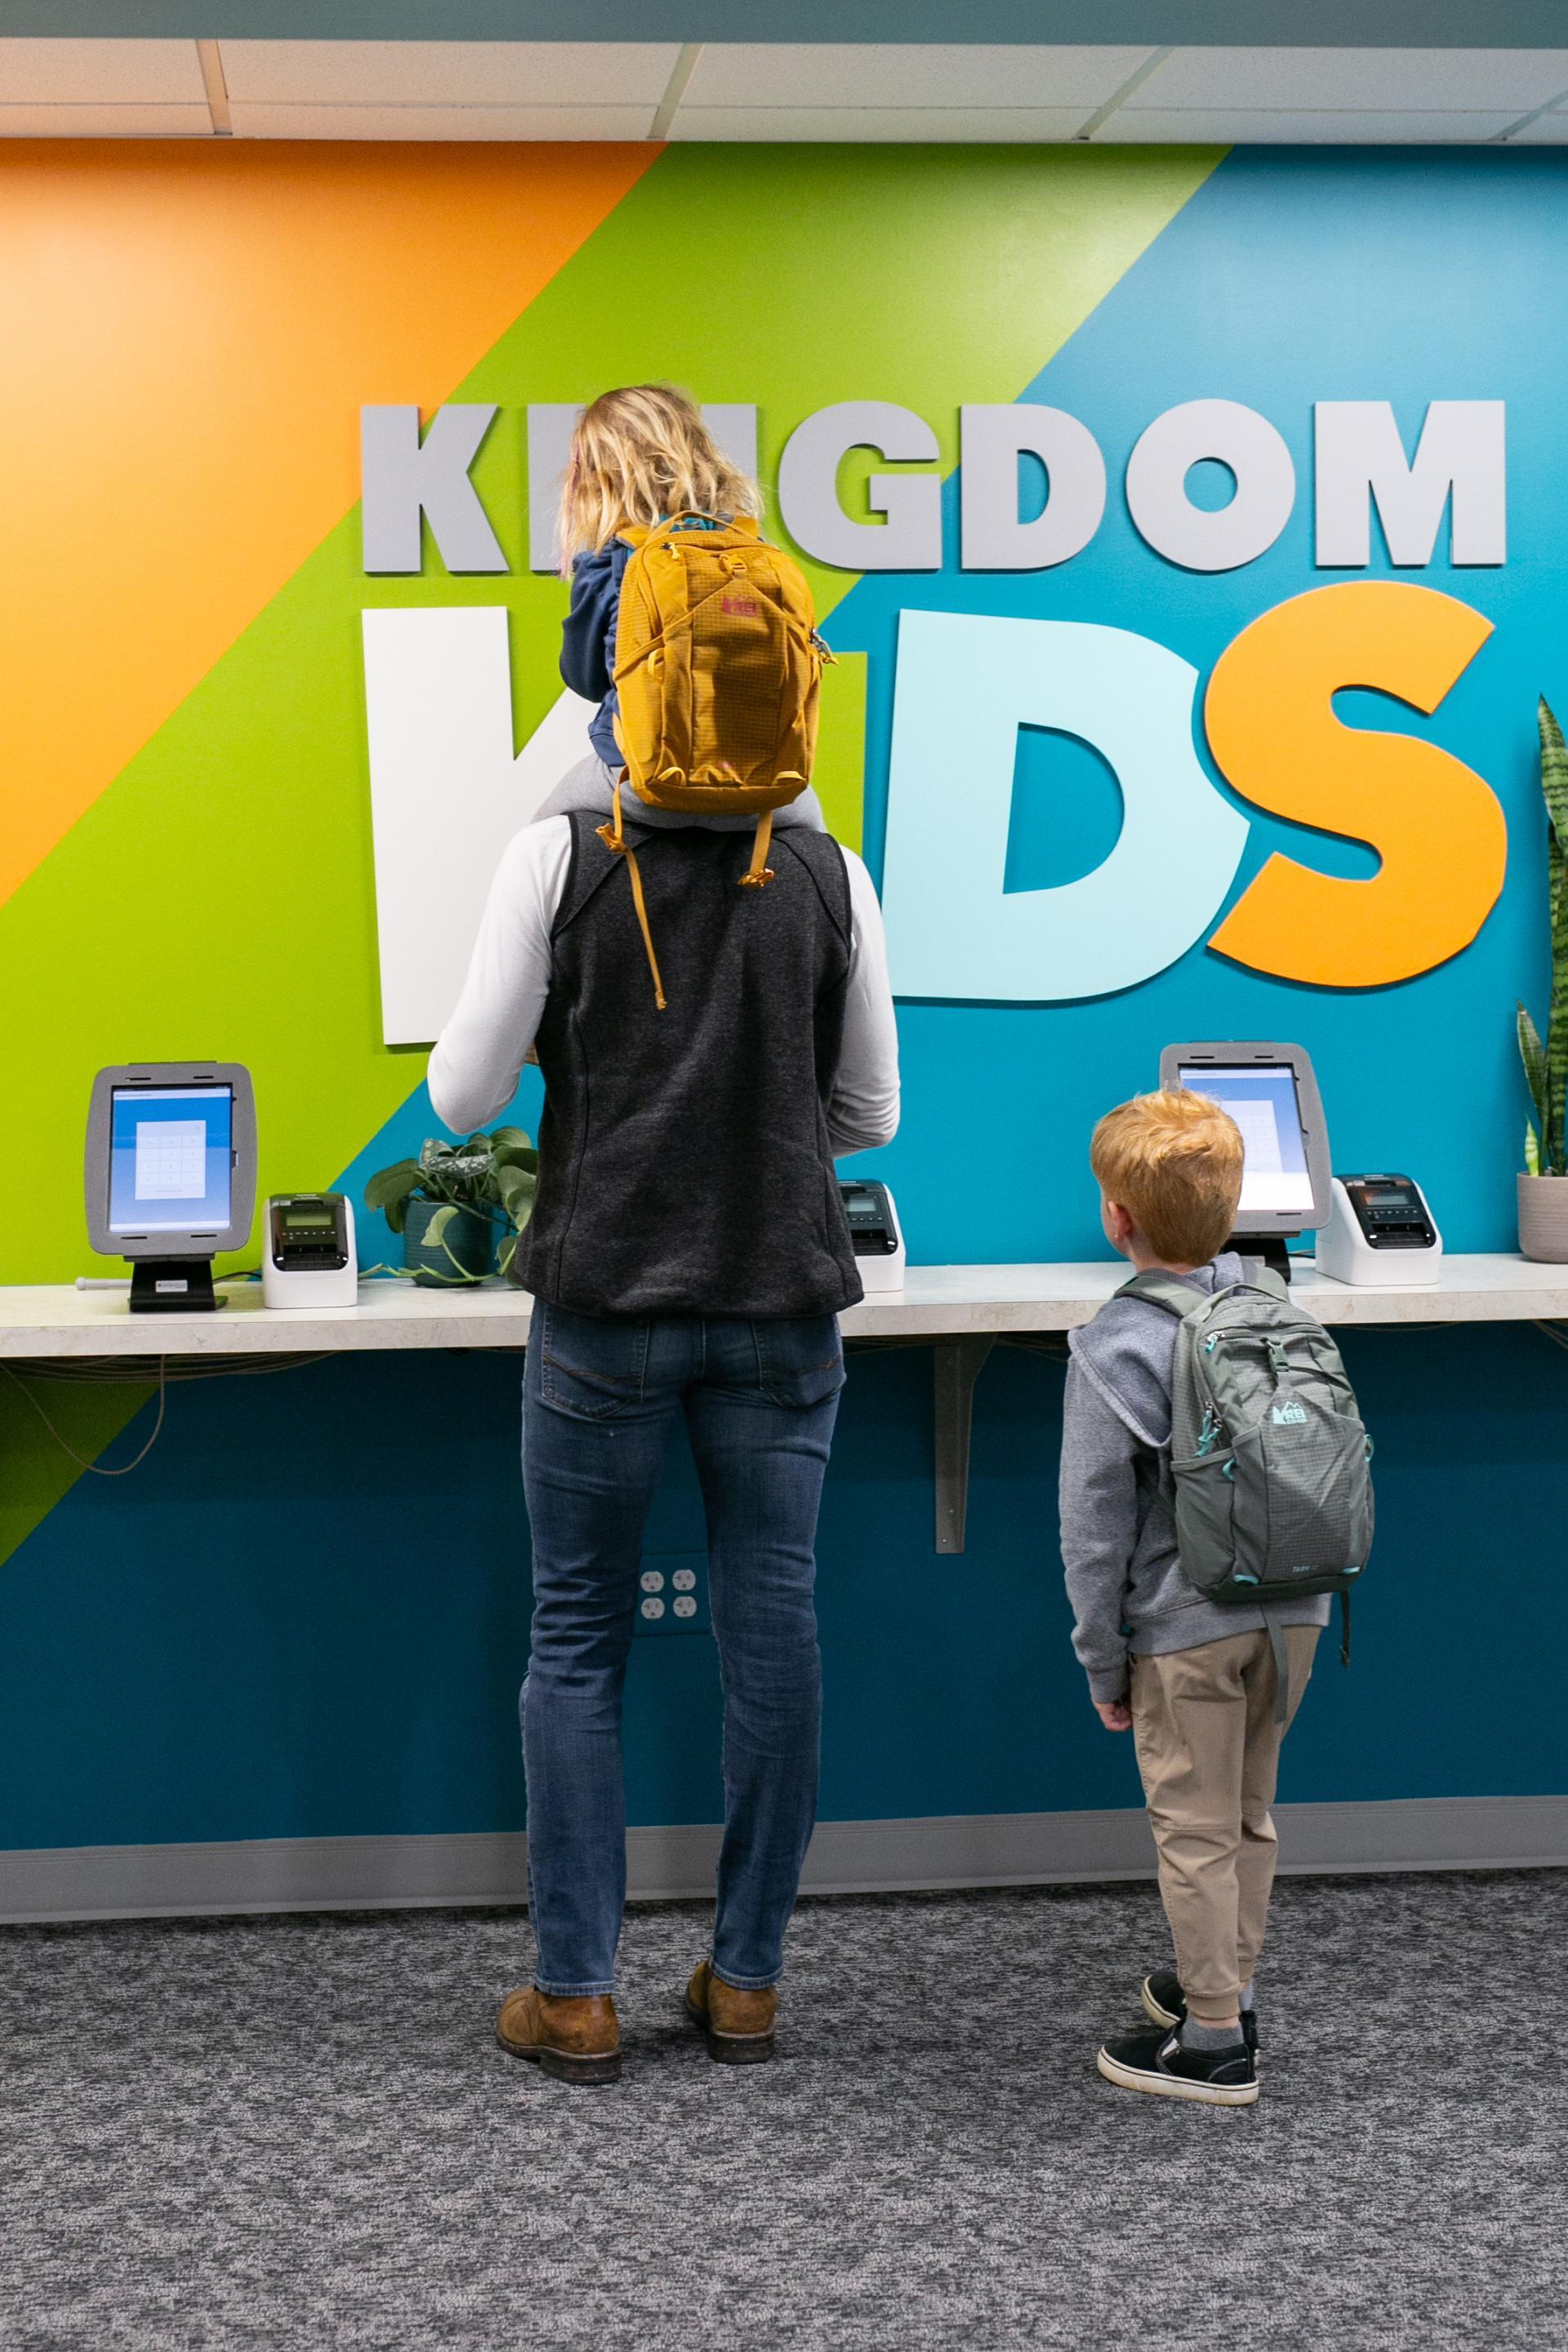 Kids check-in for Kingdom Kids.